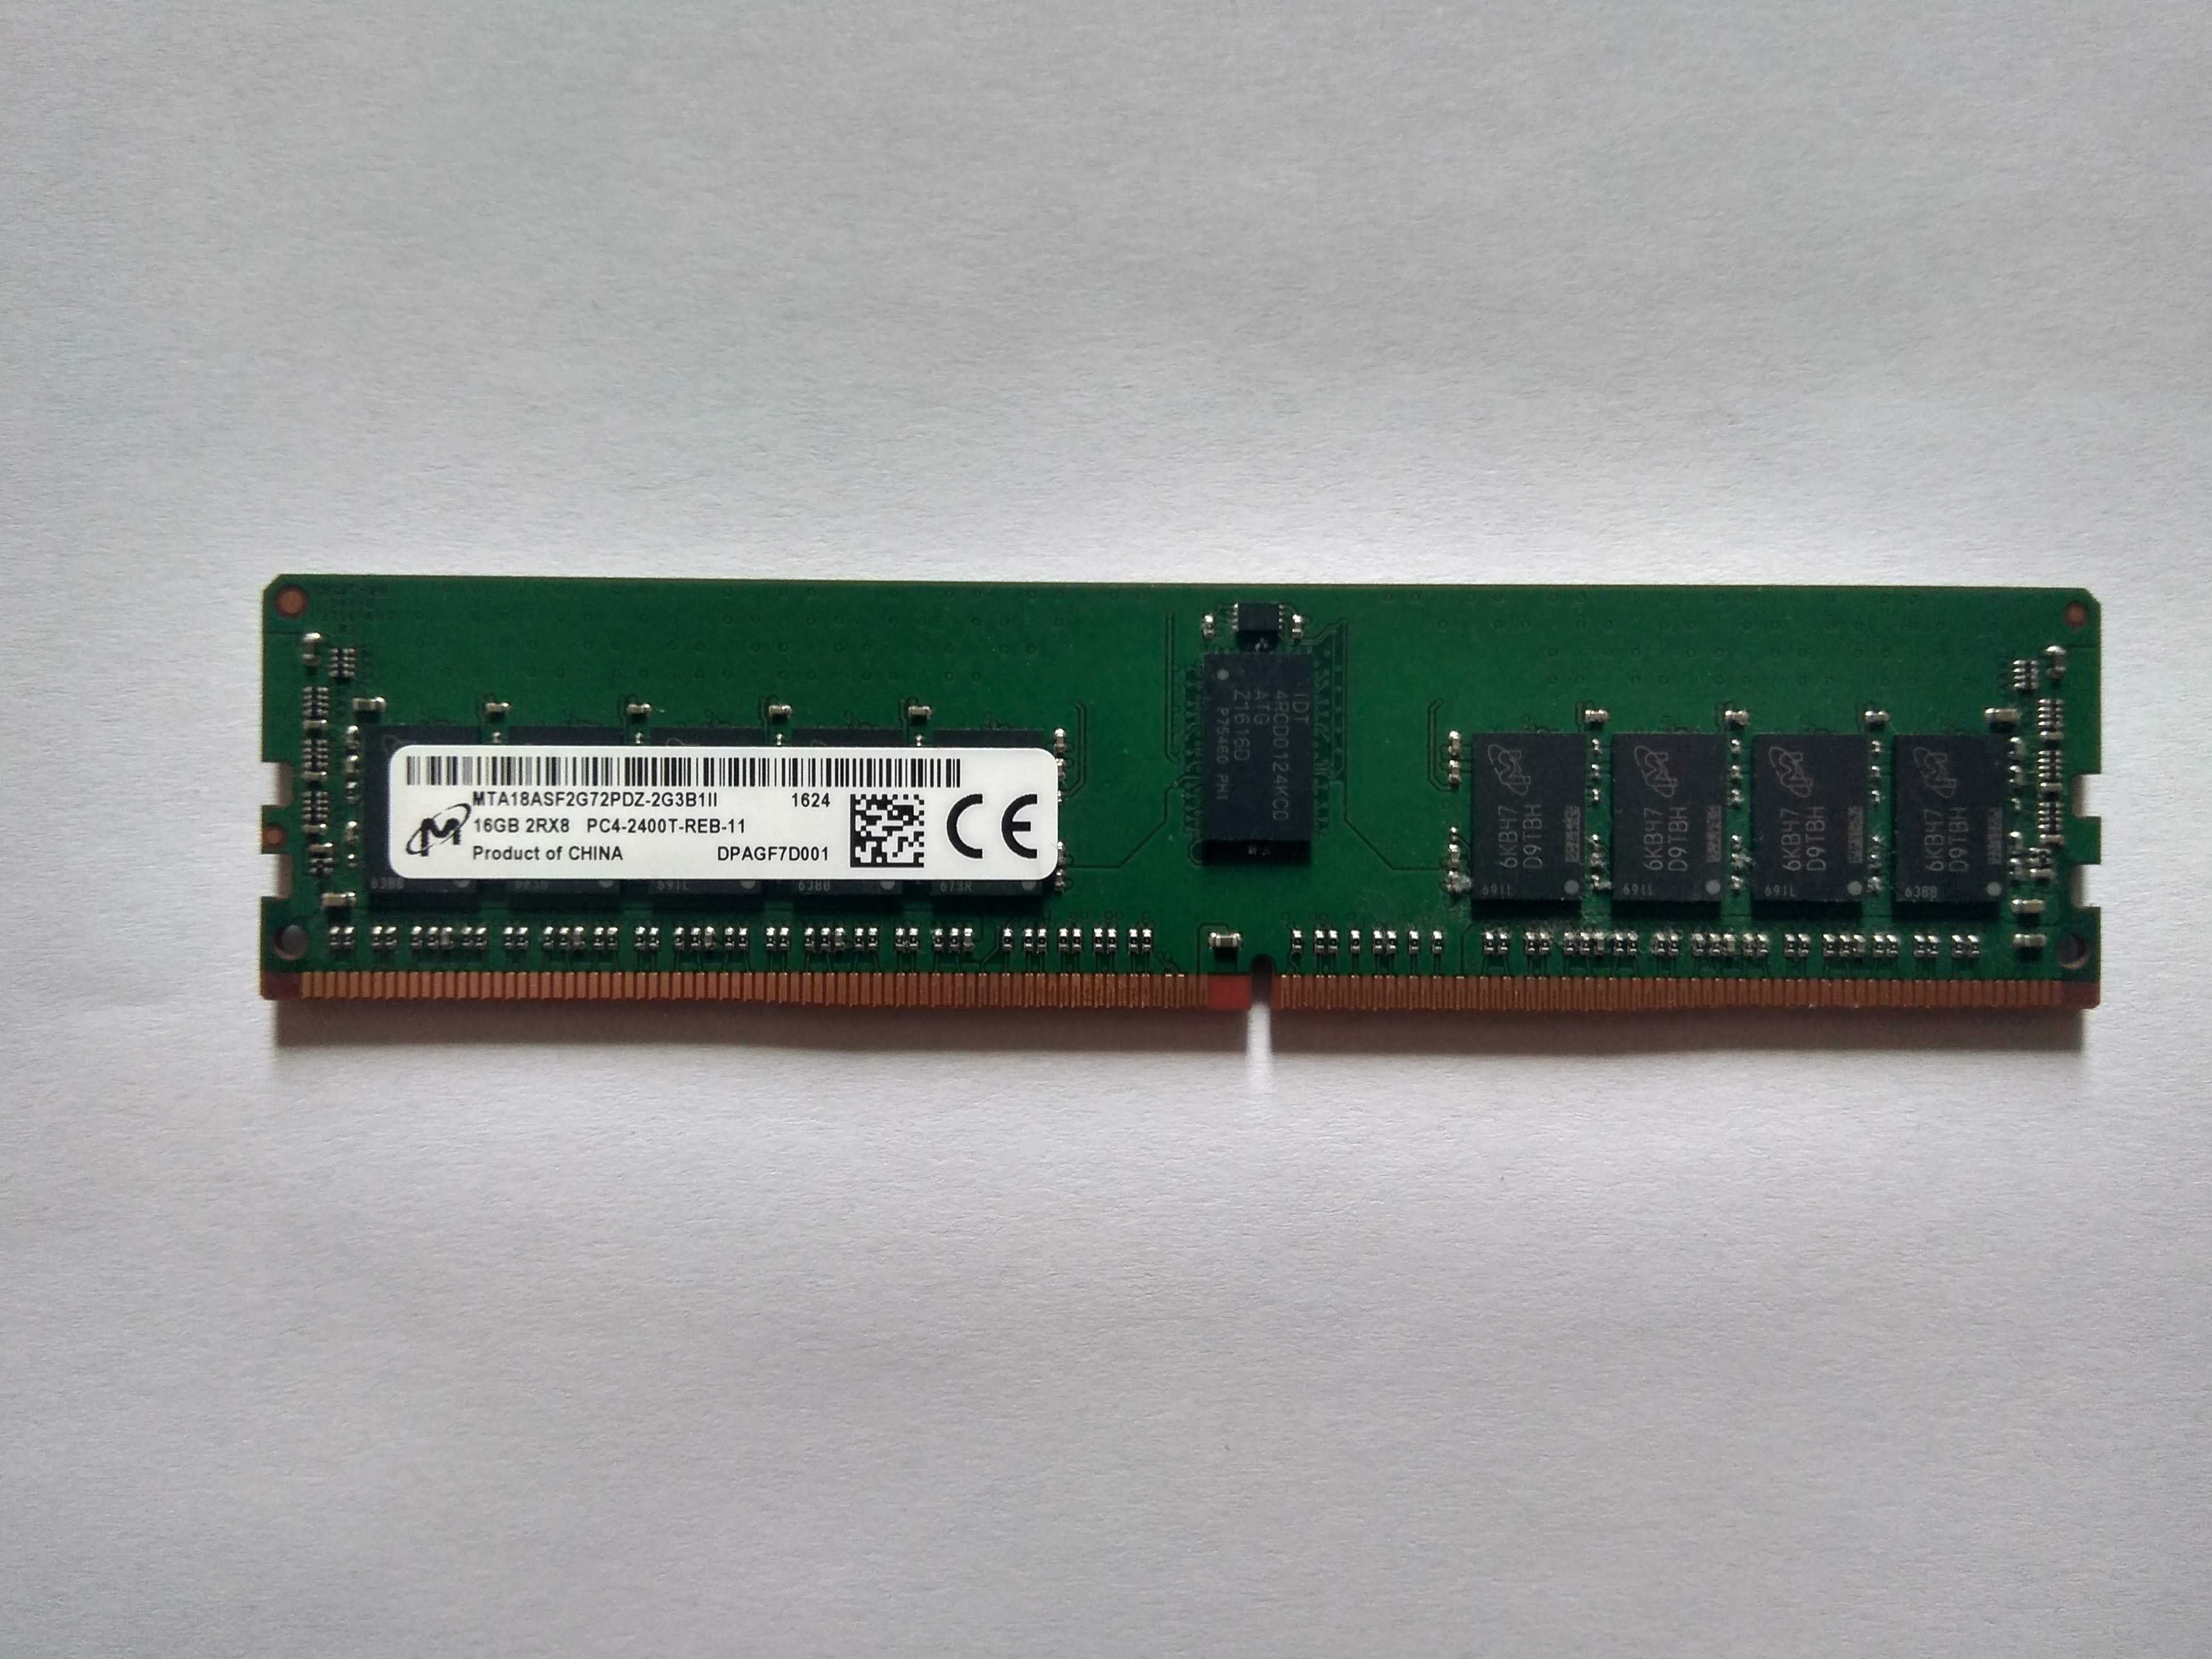 Память DDR4 Micron 16GB 2Rx8 PC4-2400T-REB-11 ECC REG серверная RDIMM